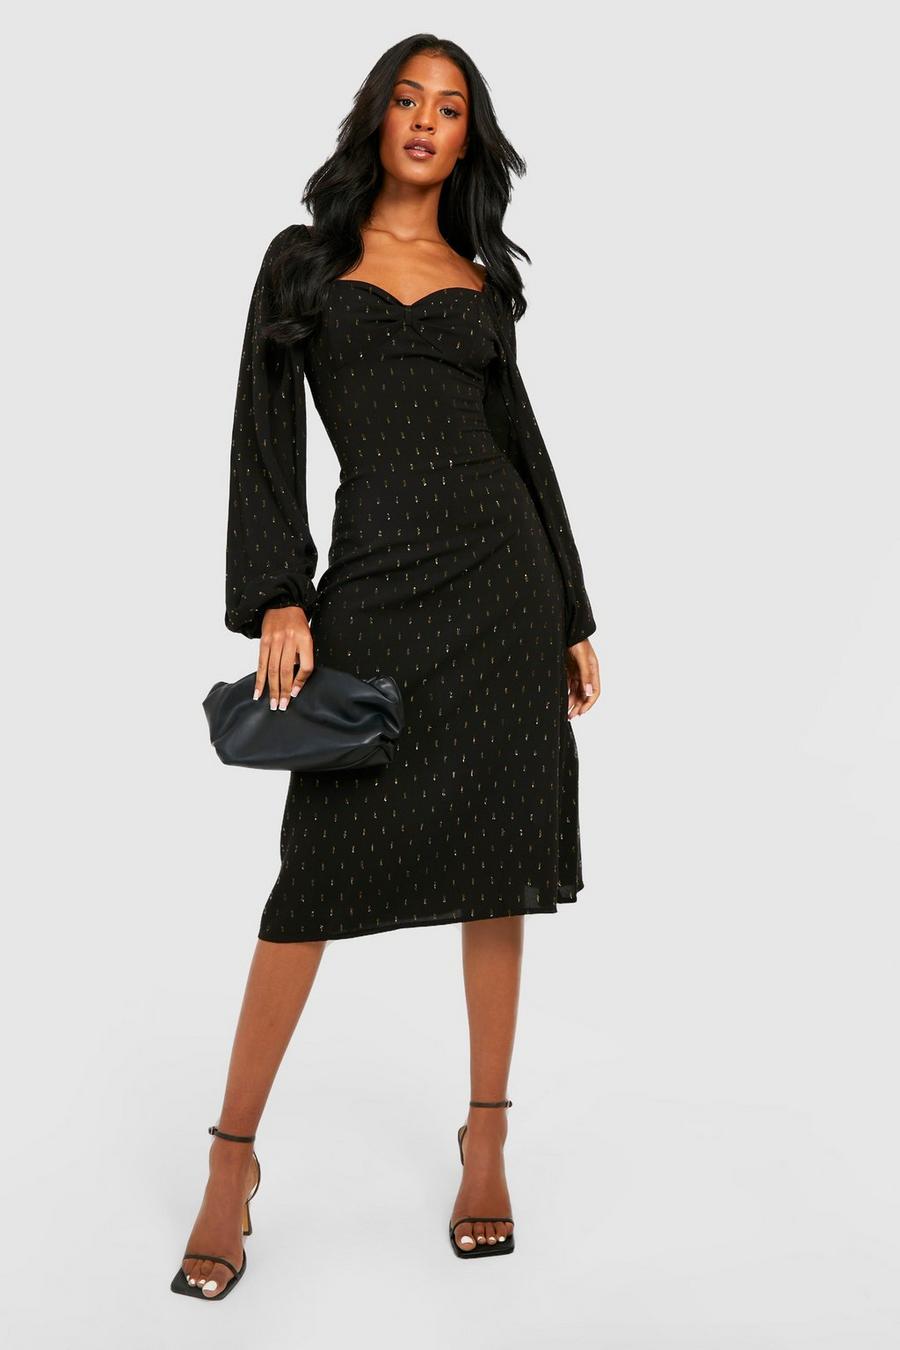 שחור שמלת מידי עם עיטור מטאלי ושרוולים בסגנון איכרים, לנשים גבוהות image number 1